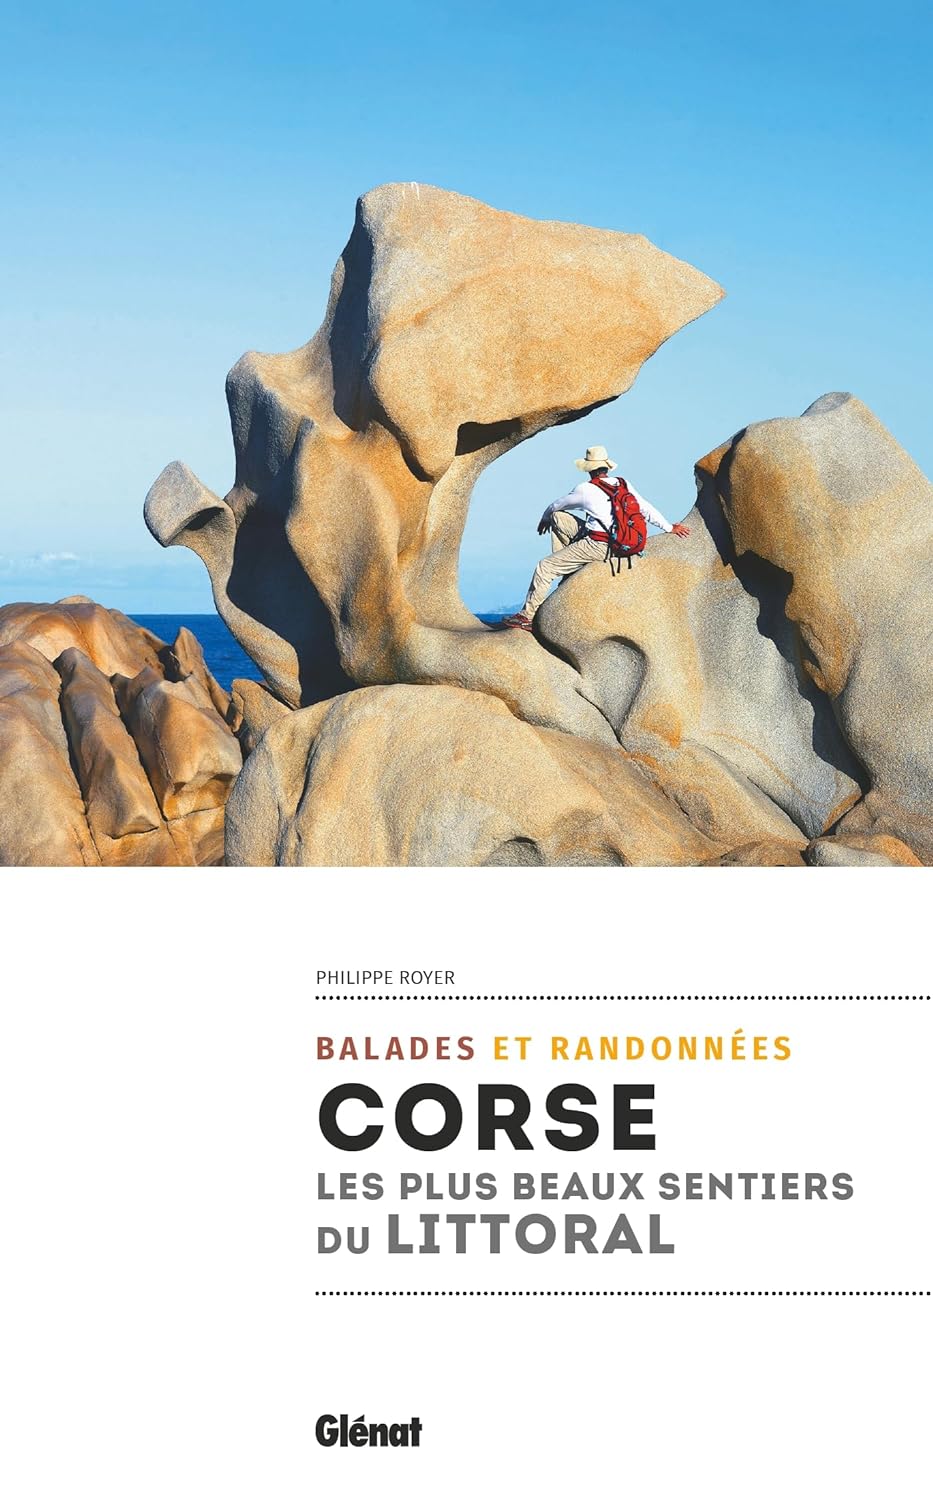 Guide de randonnées - Corse, les plus beaux sentiers du littoral | Glénat